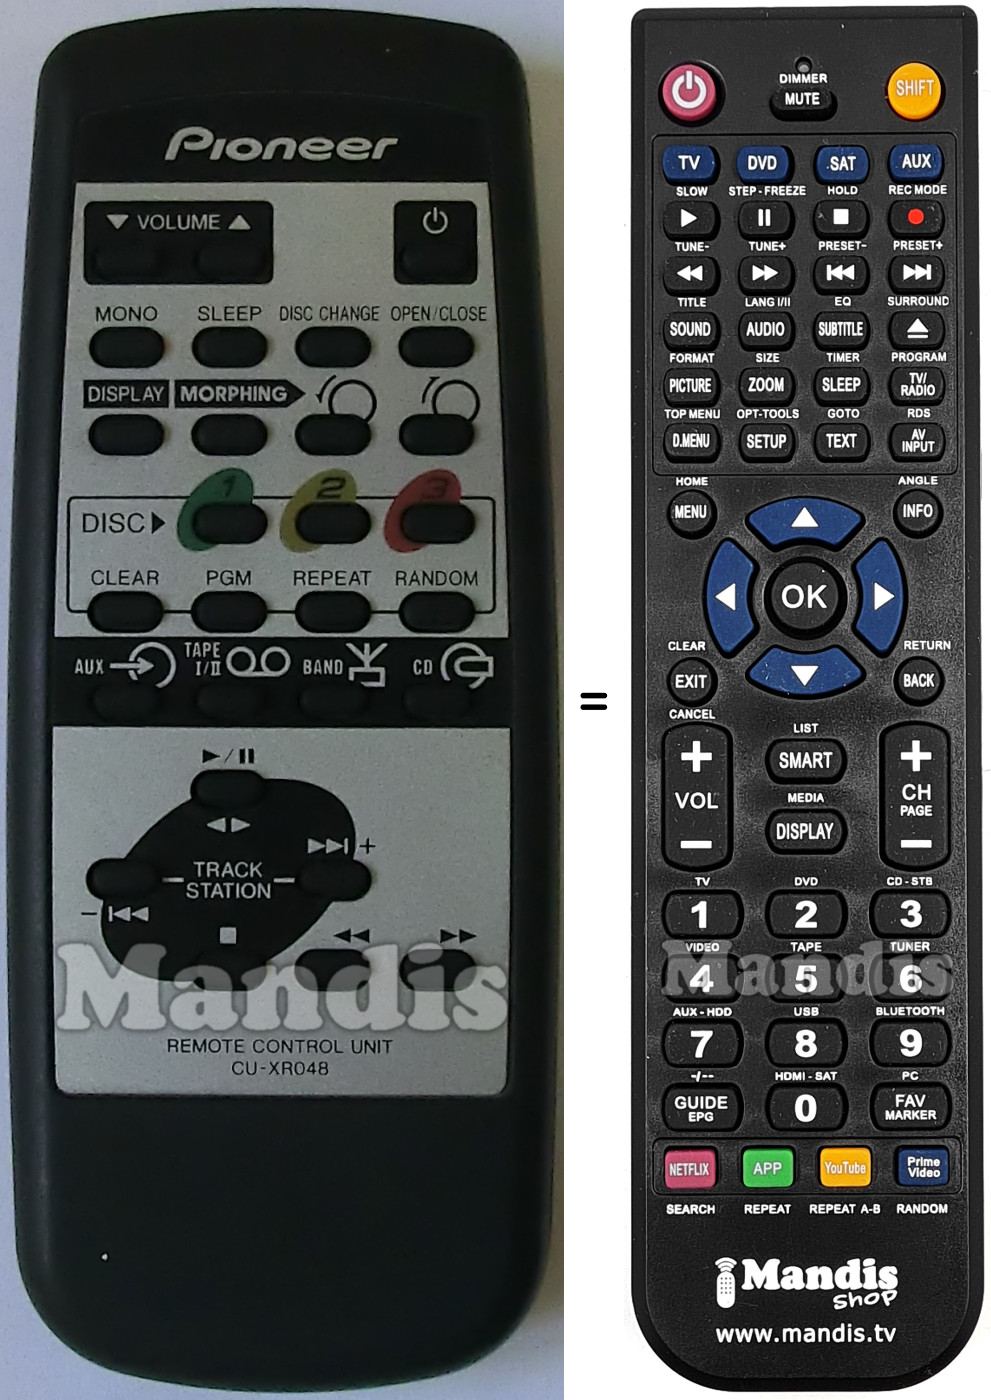 Replacement remote control CU-XR048